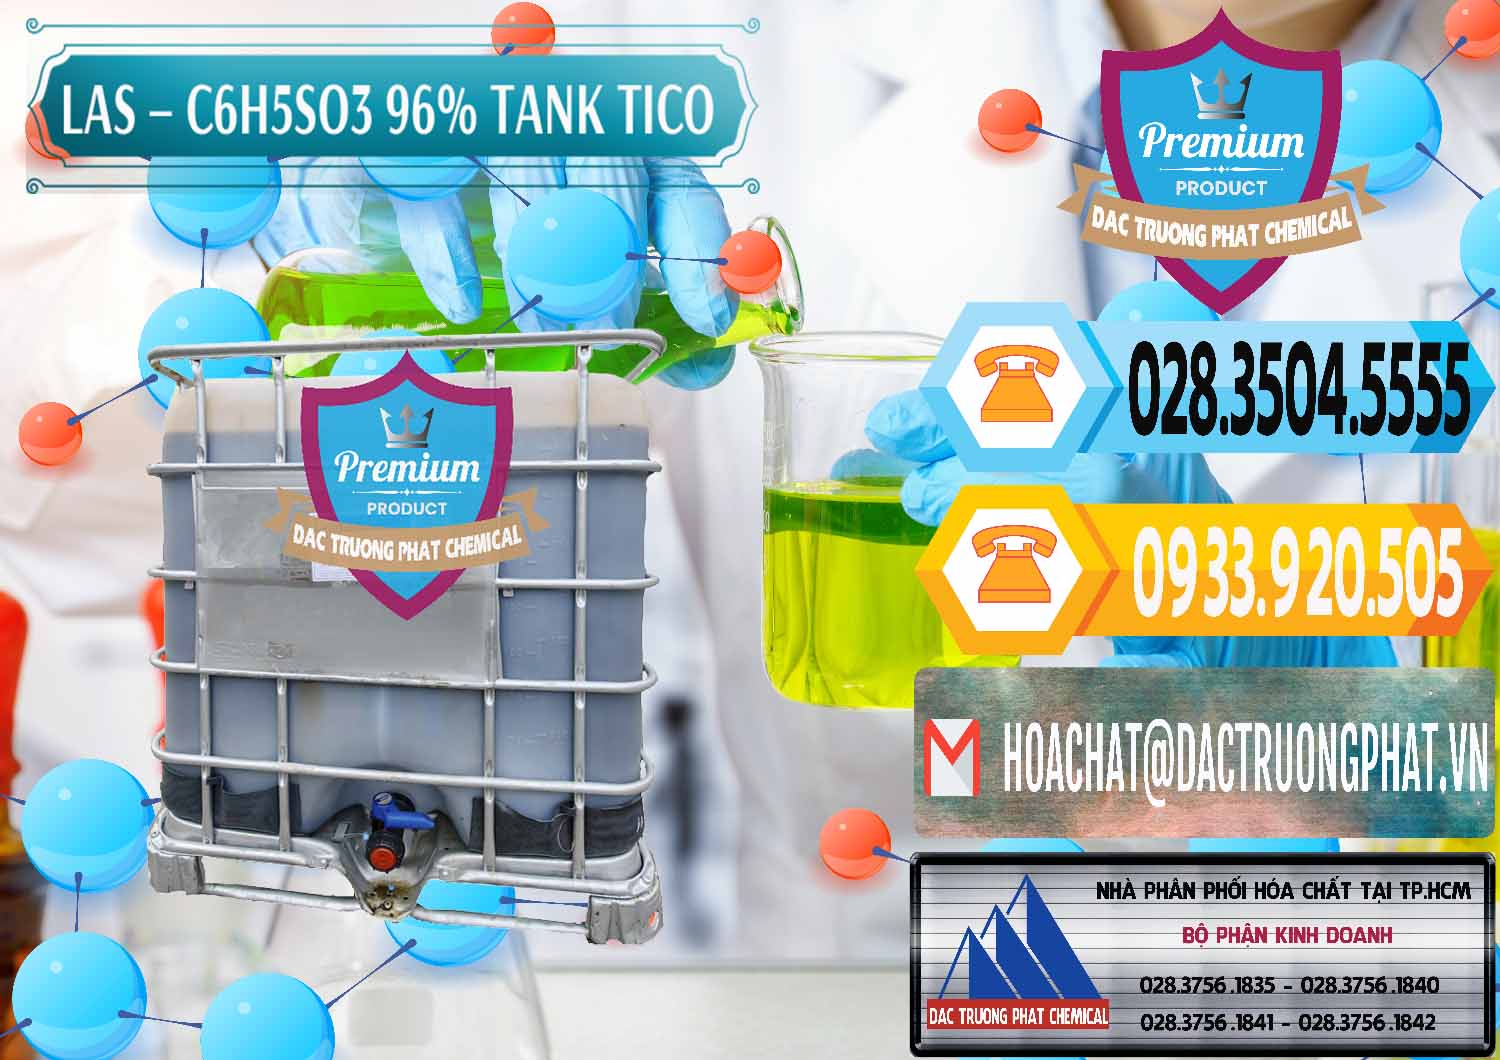 Chuyên nhập khẩu và bán Chất tạo bọt Las P Tico Tank IBC Bồn Việt Nam - 0488 - Cty chuyên phân phối _ cung ứng hóa chất tại TP.HCM - hoachattayrua.net